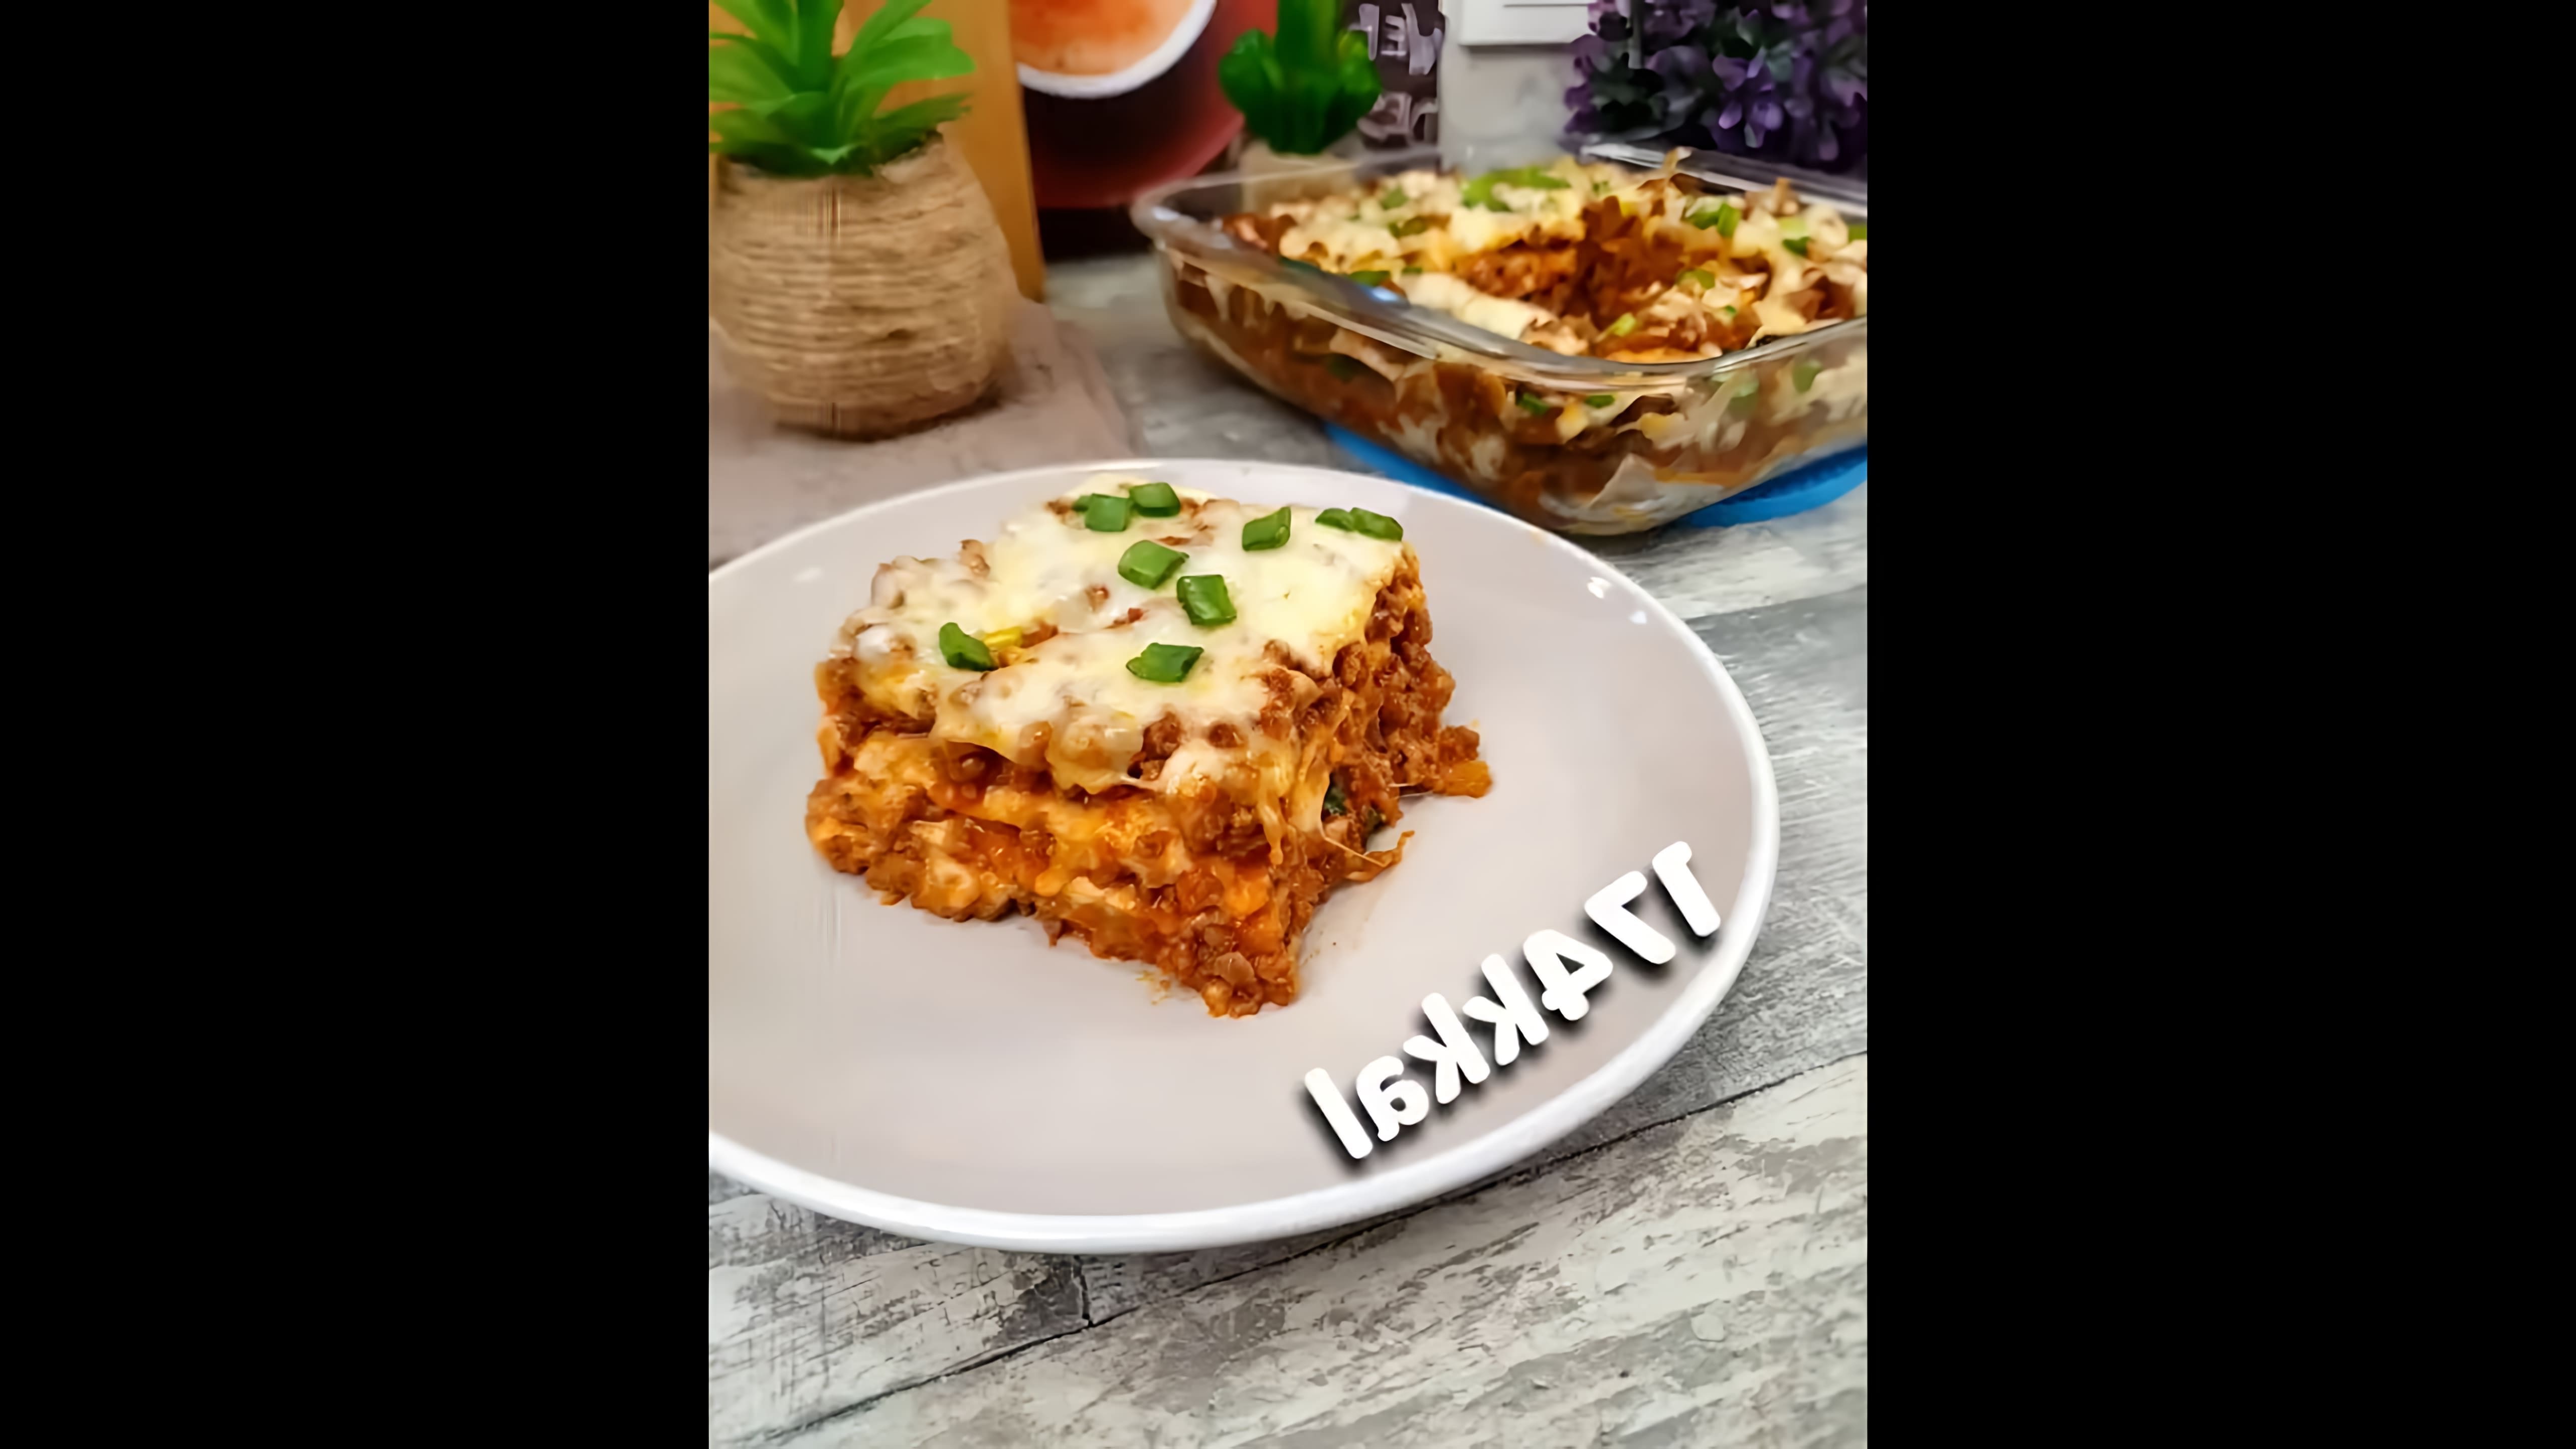 Классический рецепт лазаньи с фаршем - это видео-ролик, который демонстрирует процесс приготовления традиционного итальянского блюда